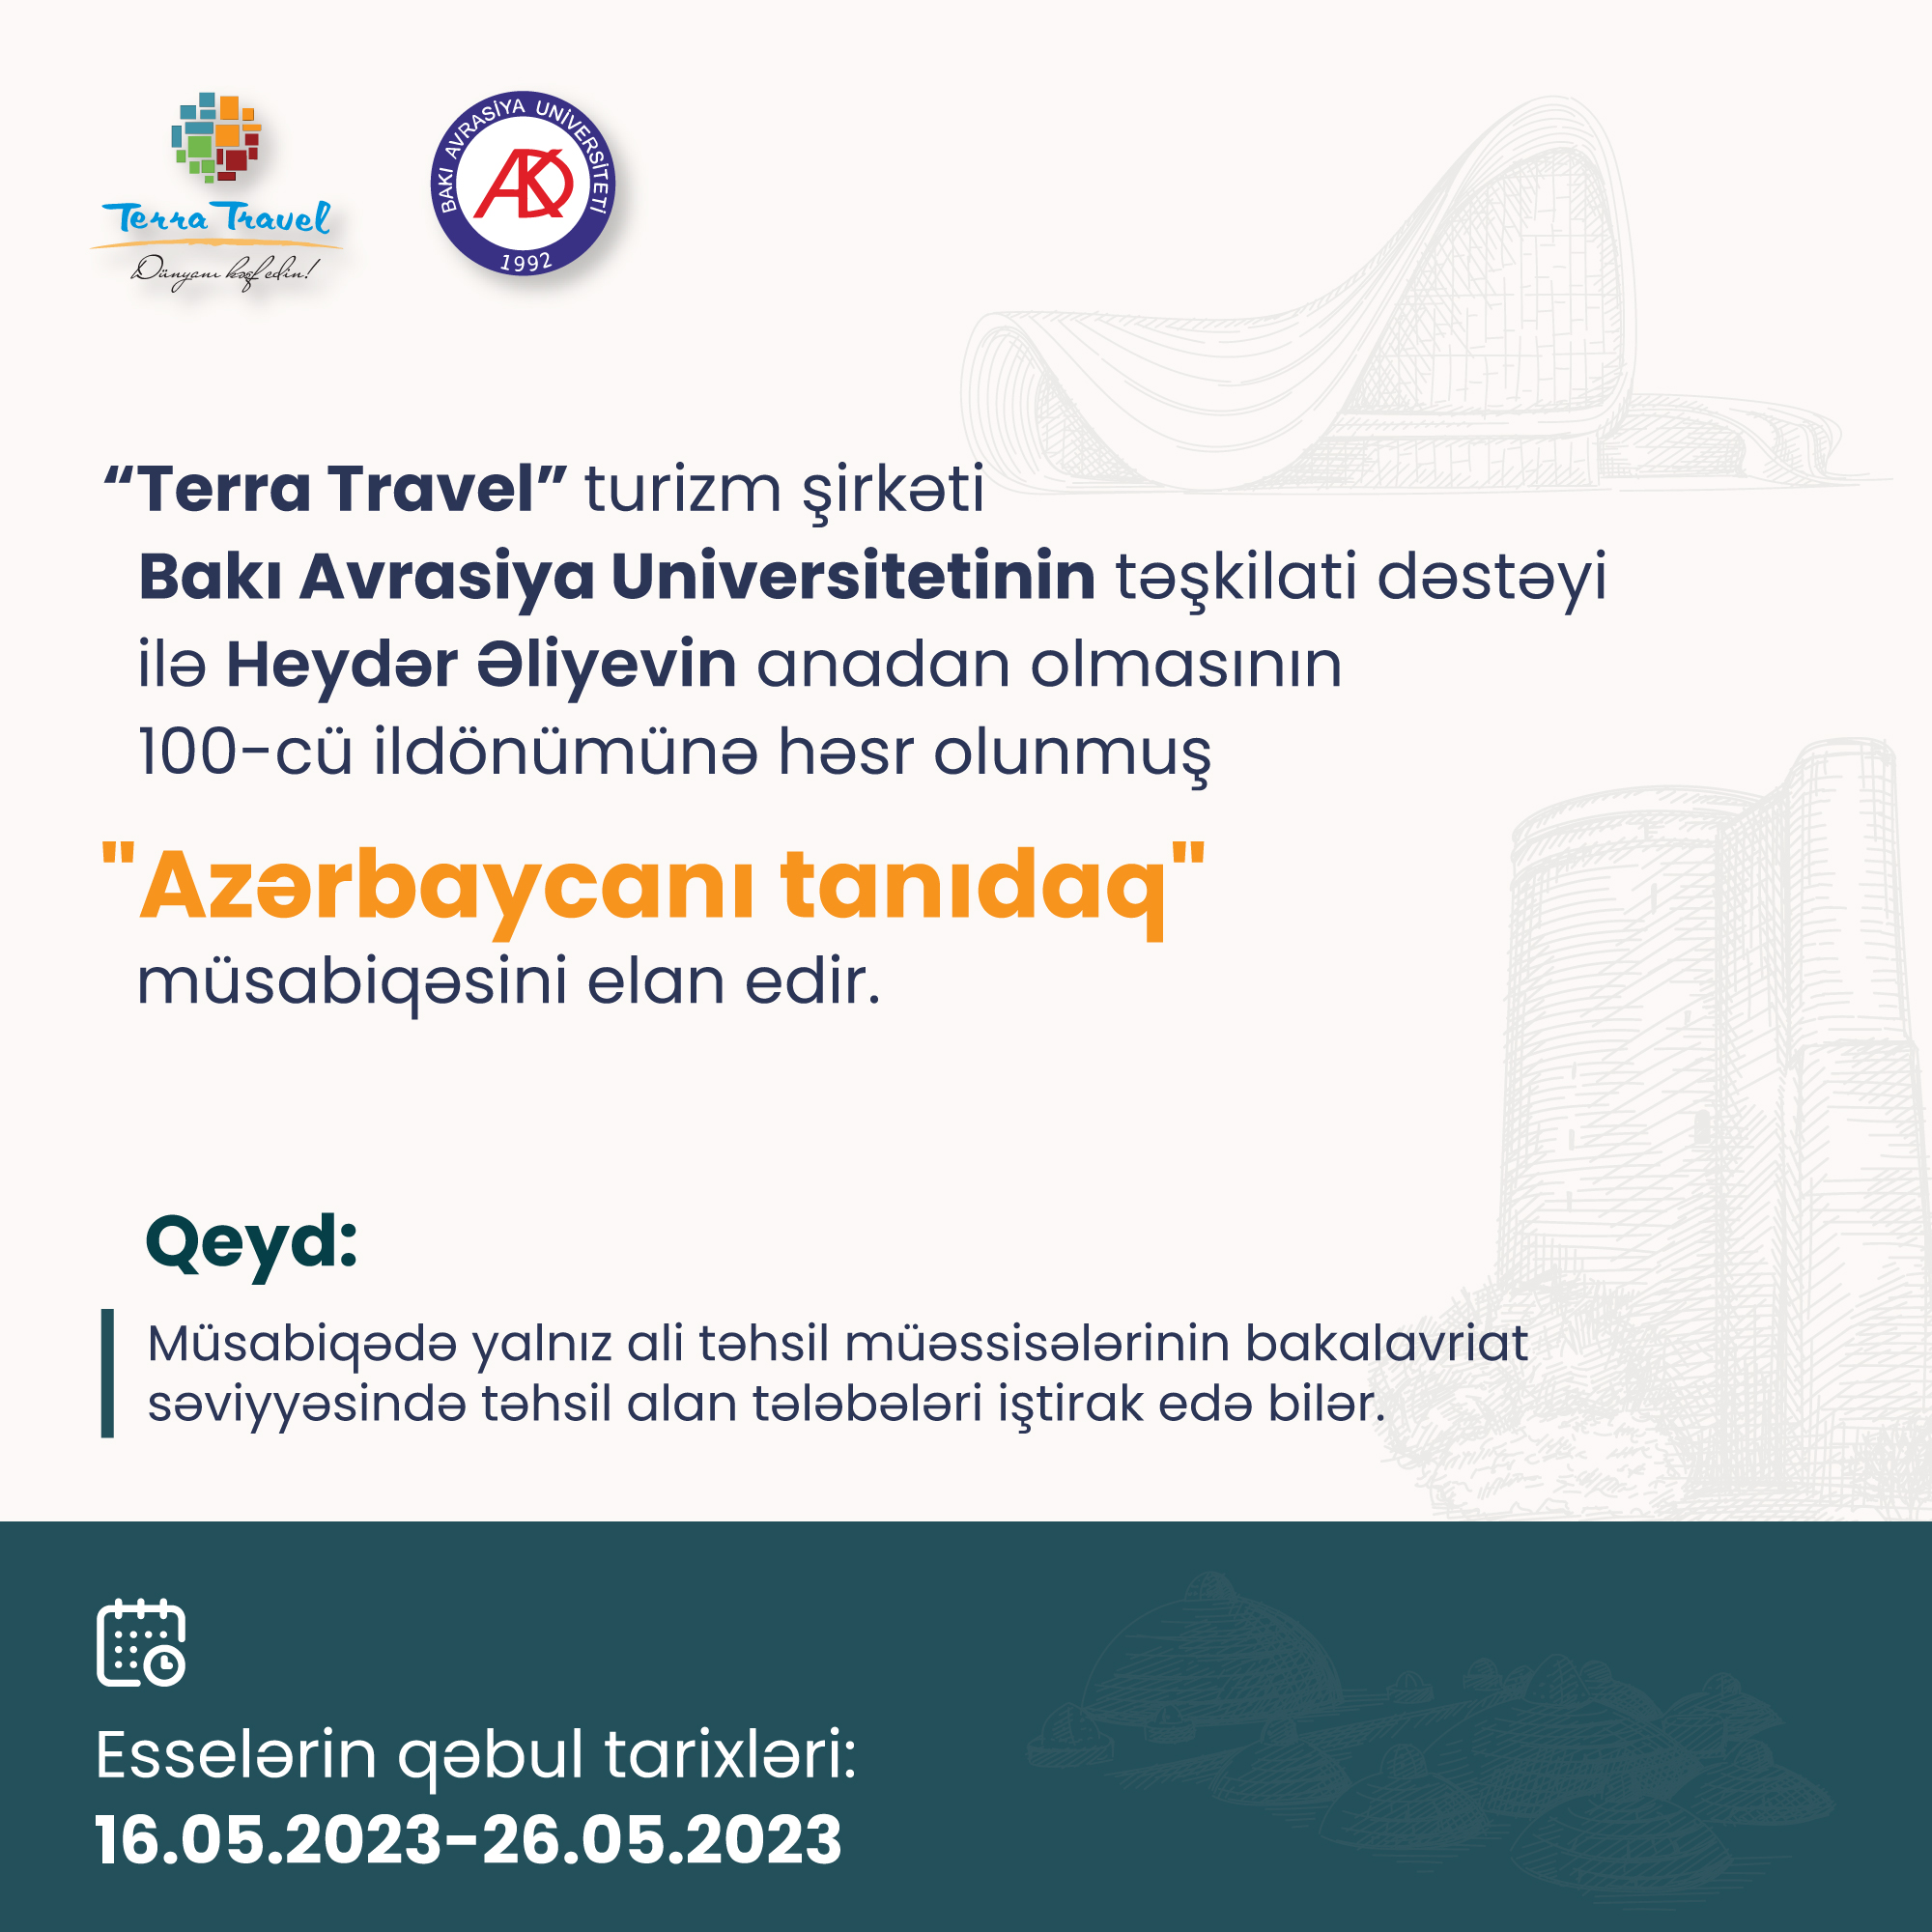 "Azərbaycanı tanıdaq" esse müsabiqəsi